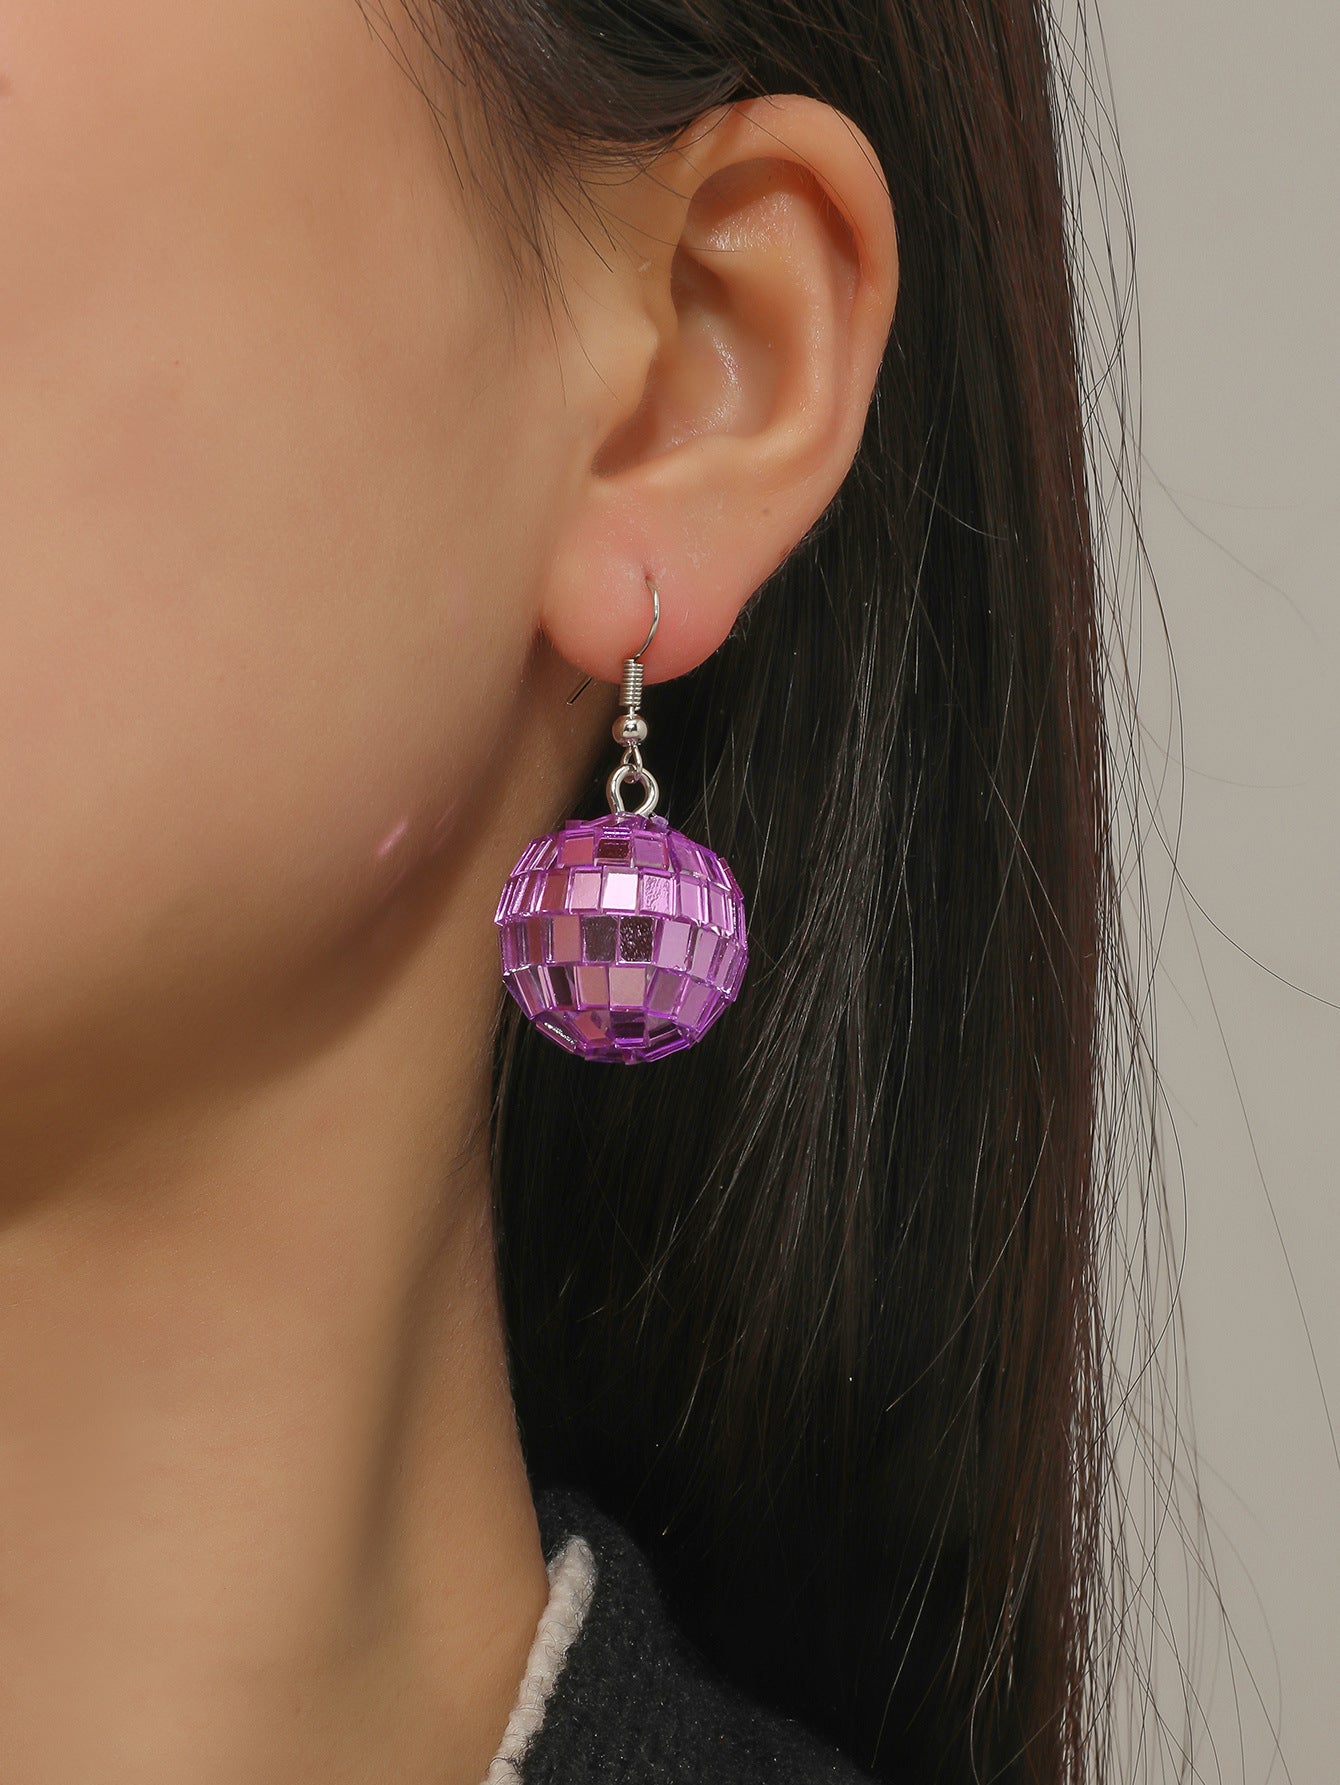 purple mirror ball earrings, taylor swift style